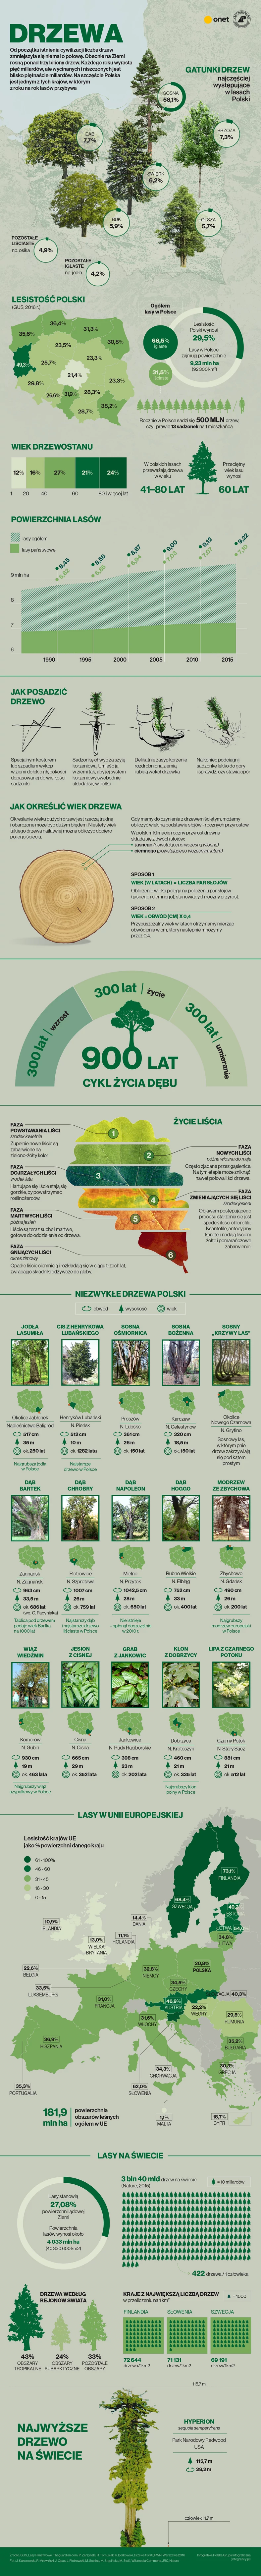 Drzewa w Polsce i na świecie [INFOGRAFIKA]